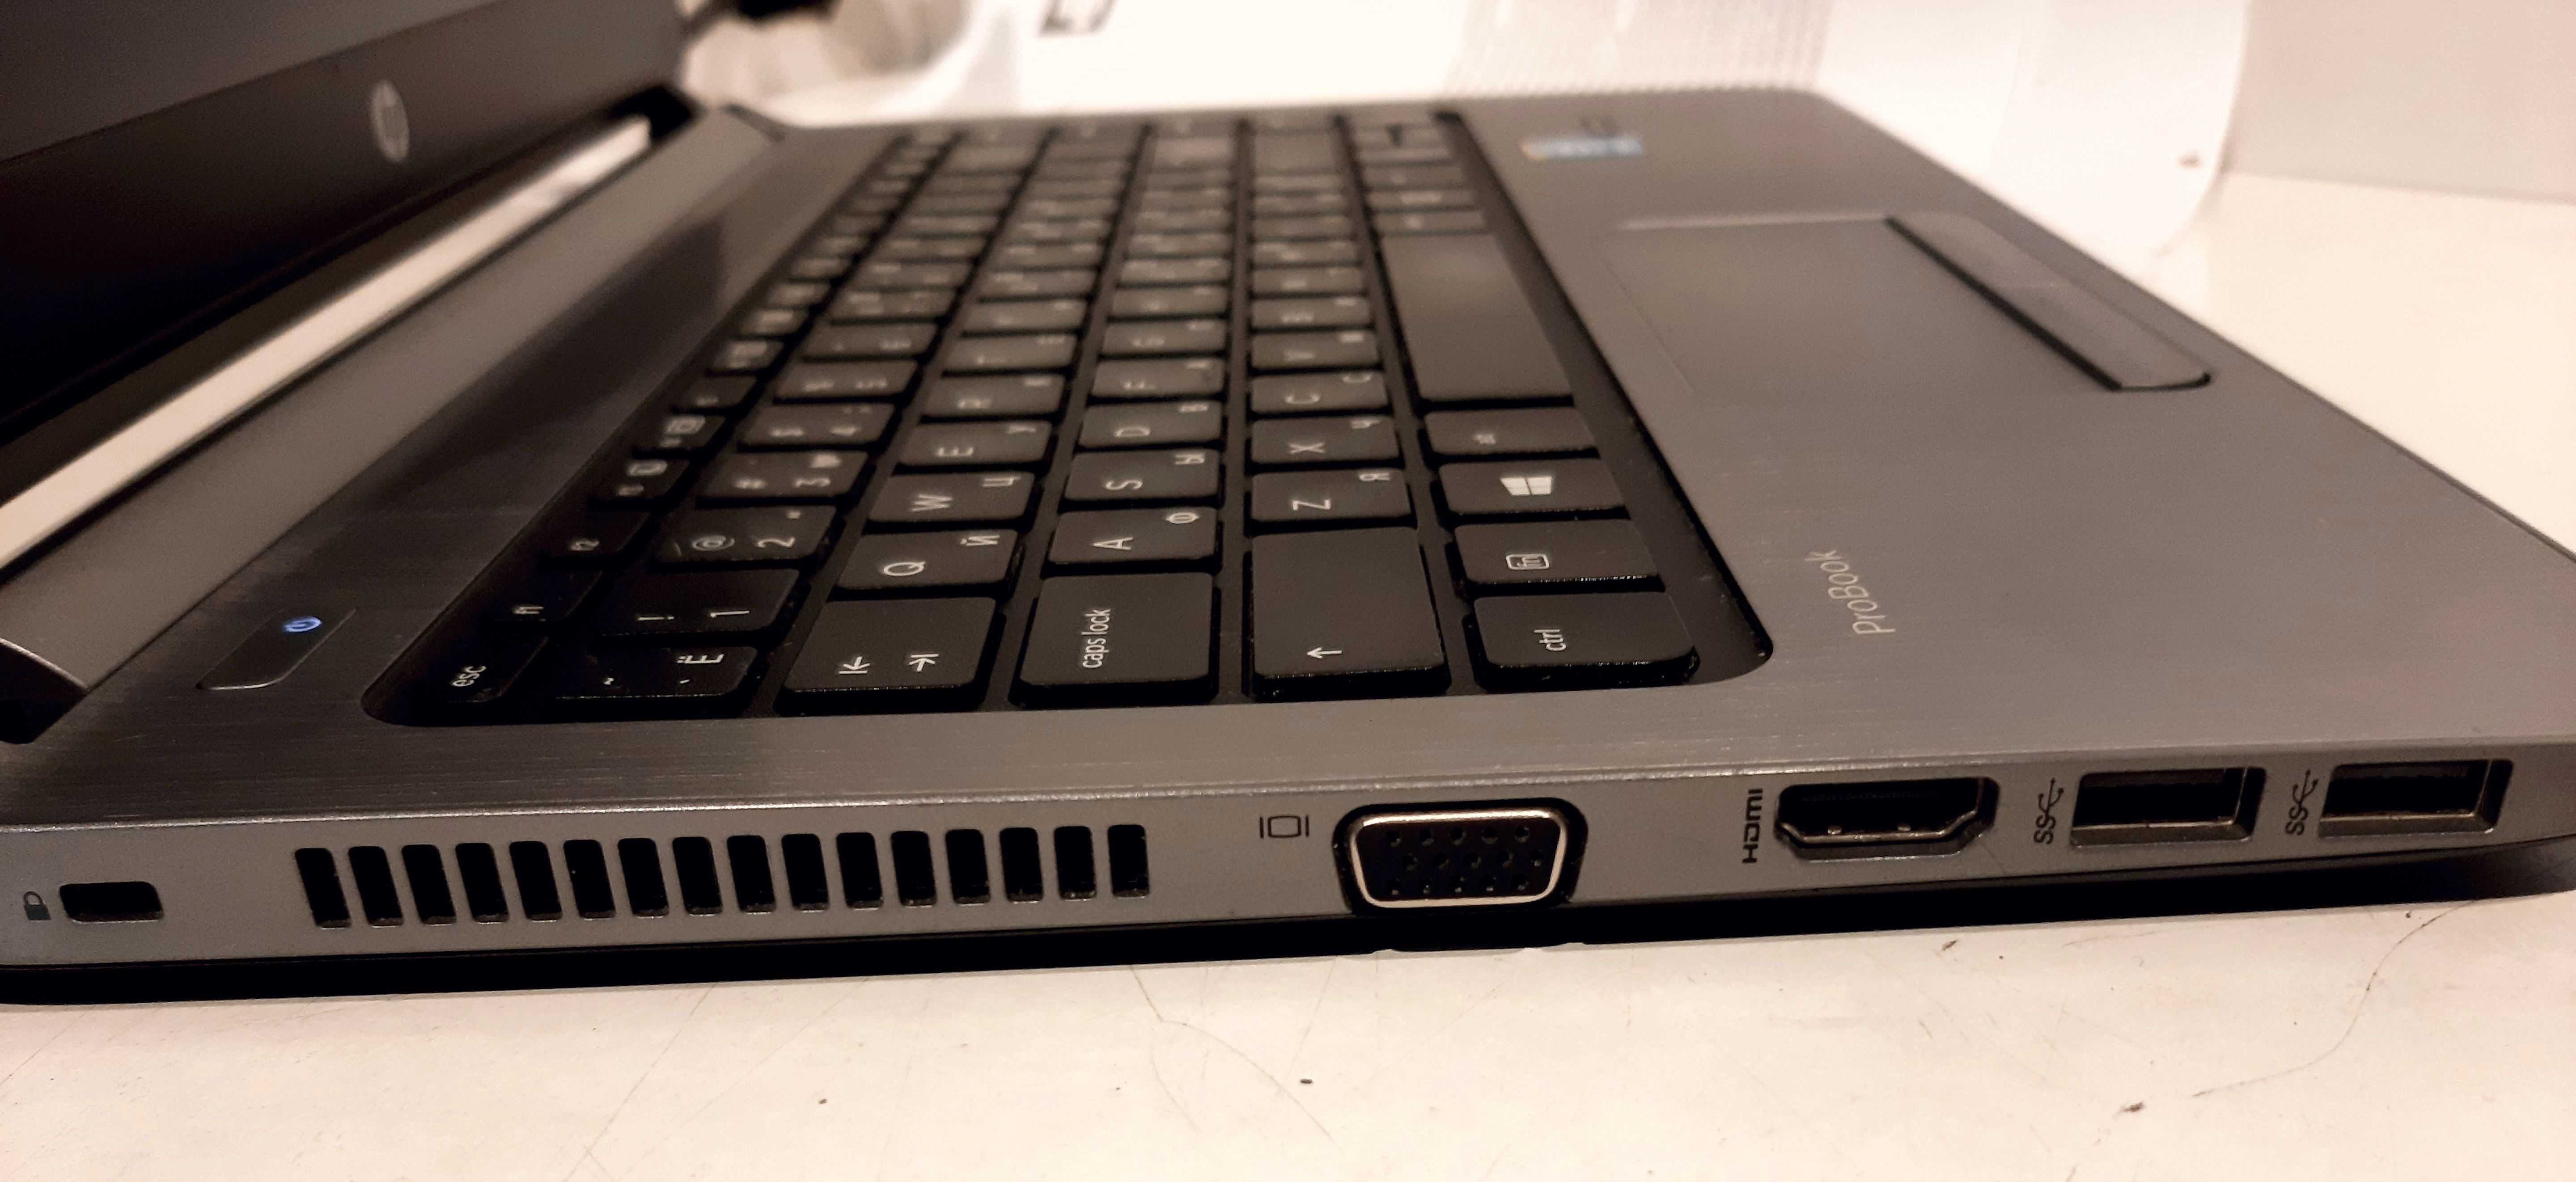 13.3" Ноутбук HP ProBook 430 G2/i5-5200U/8ГБ/SSD 120